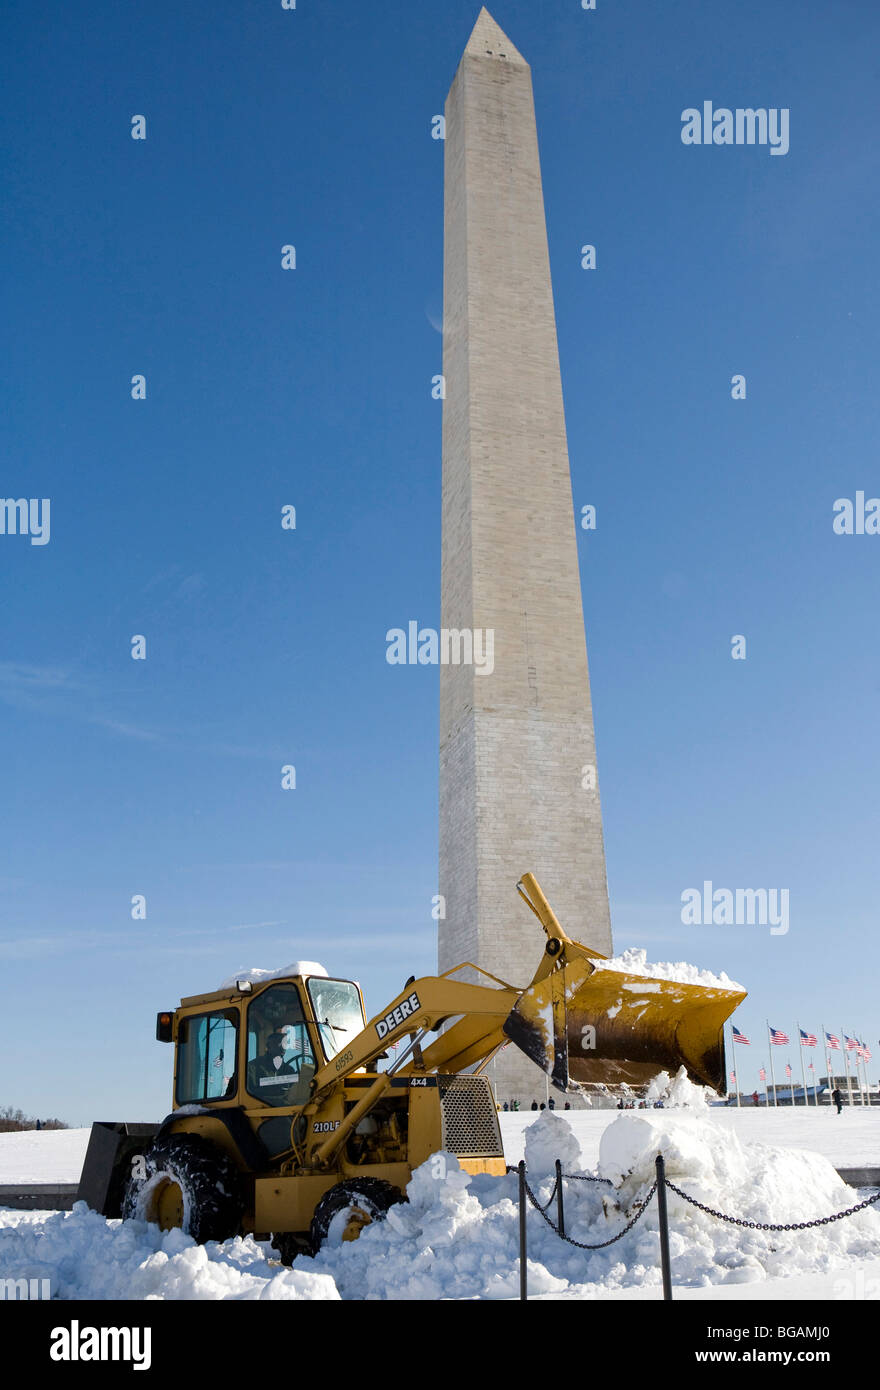 A Washington DC neige scène de la Mall montrant le Washington Monument. Banque D'Images